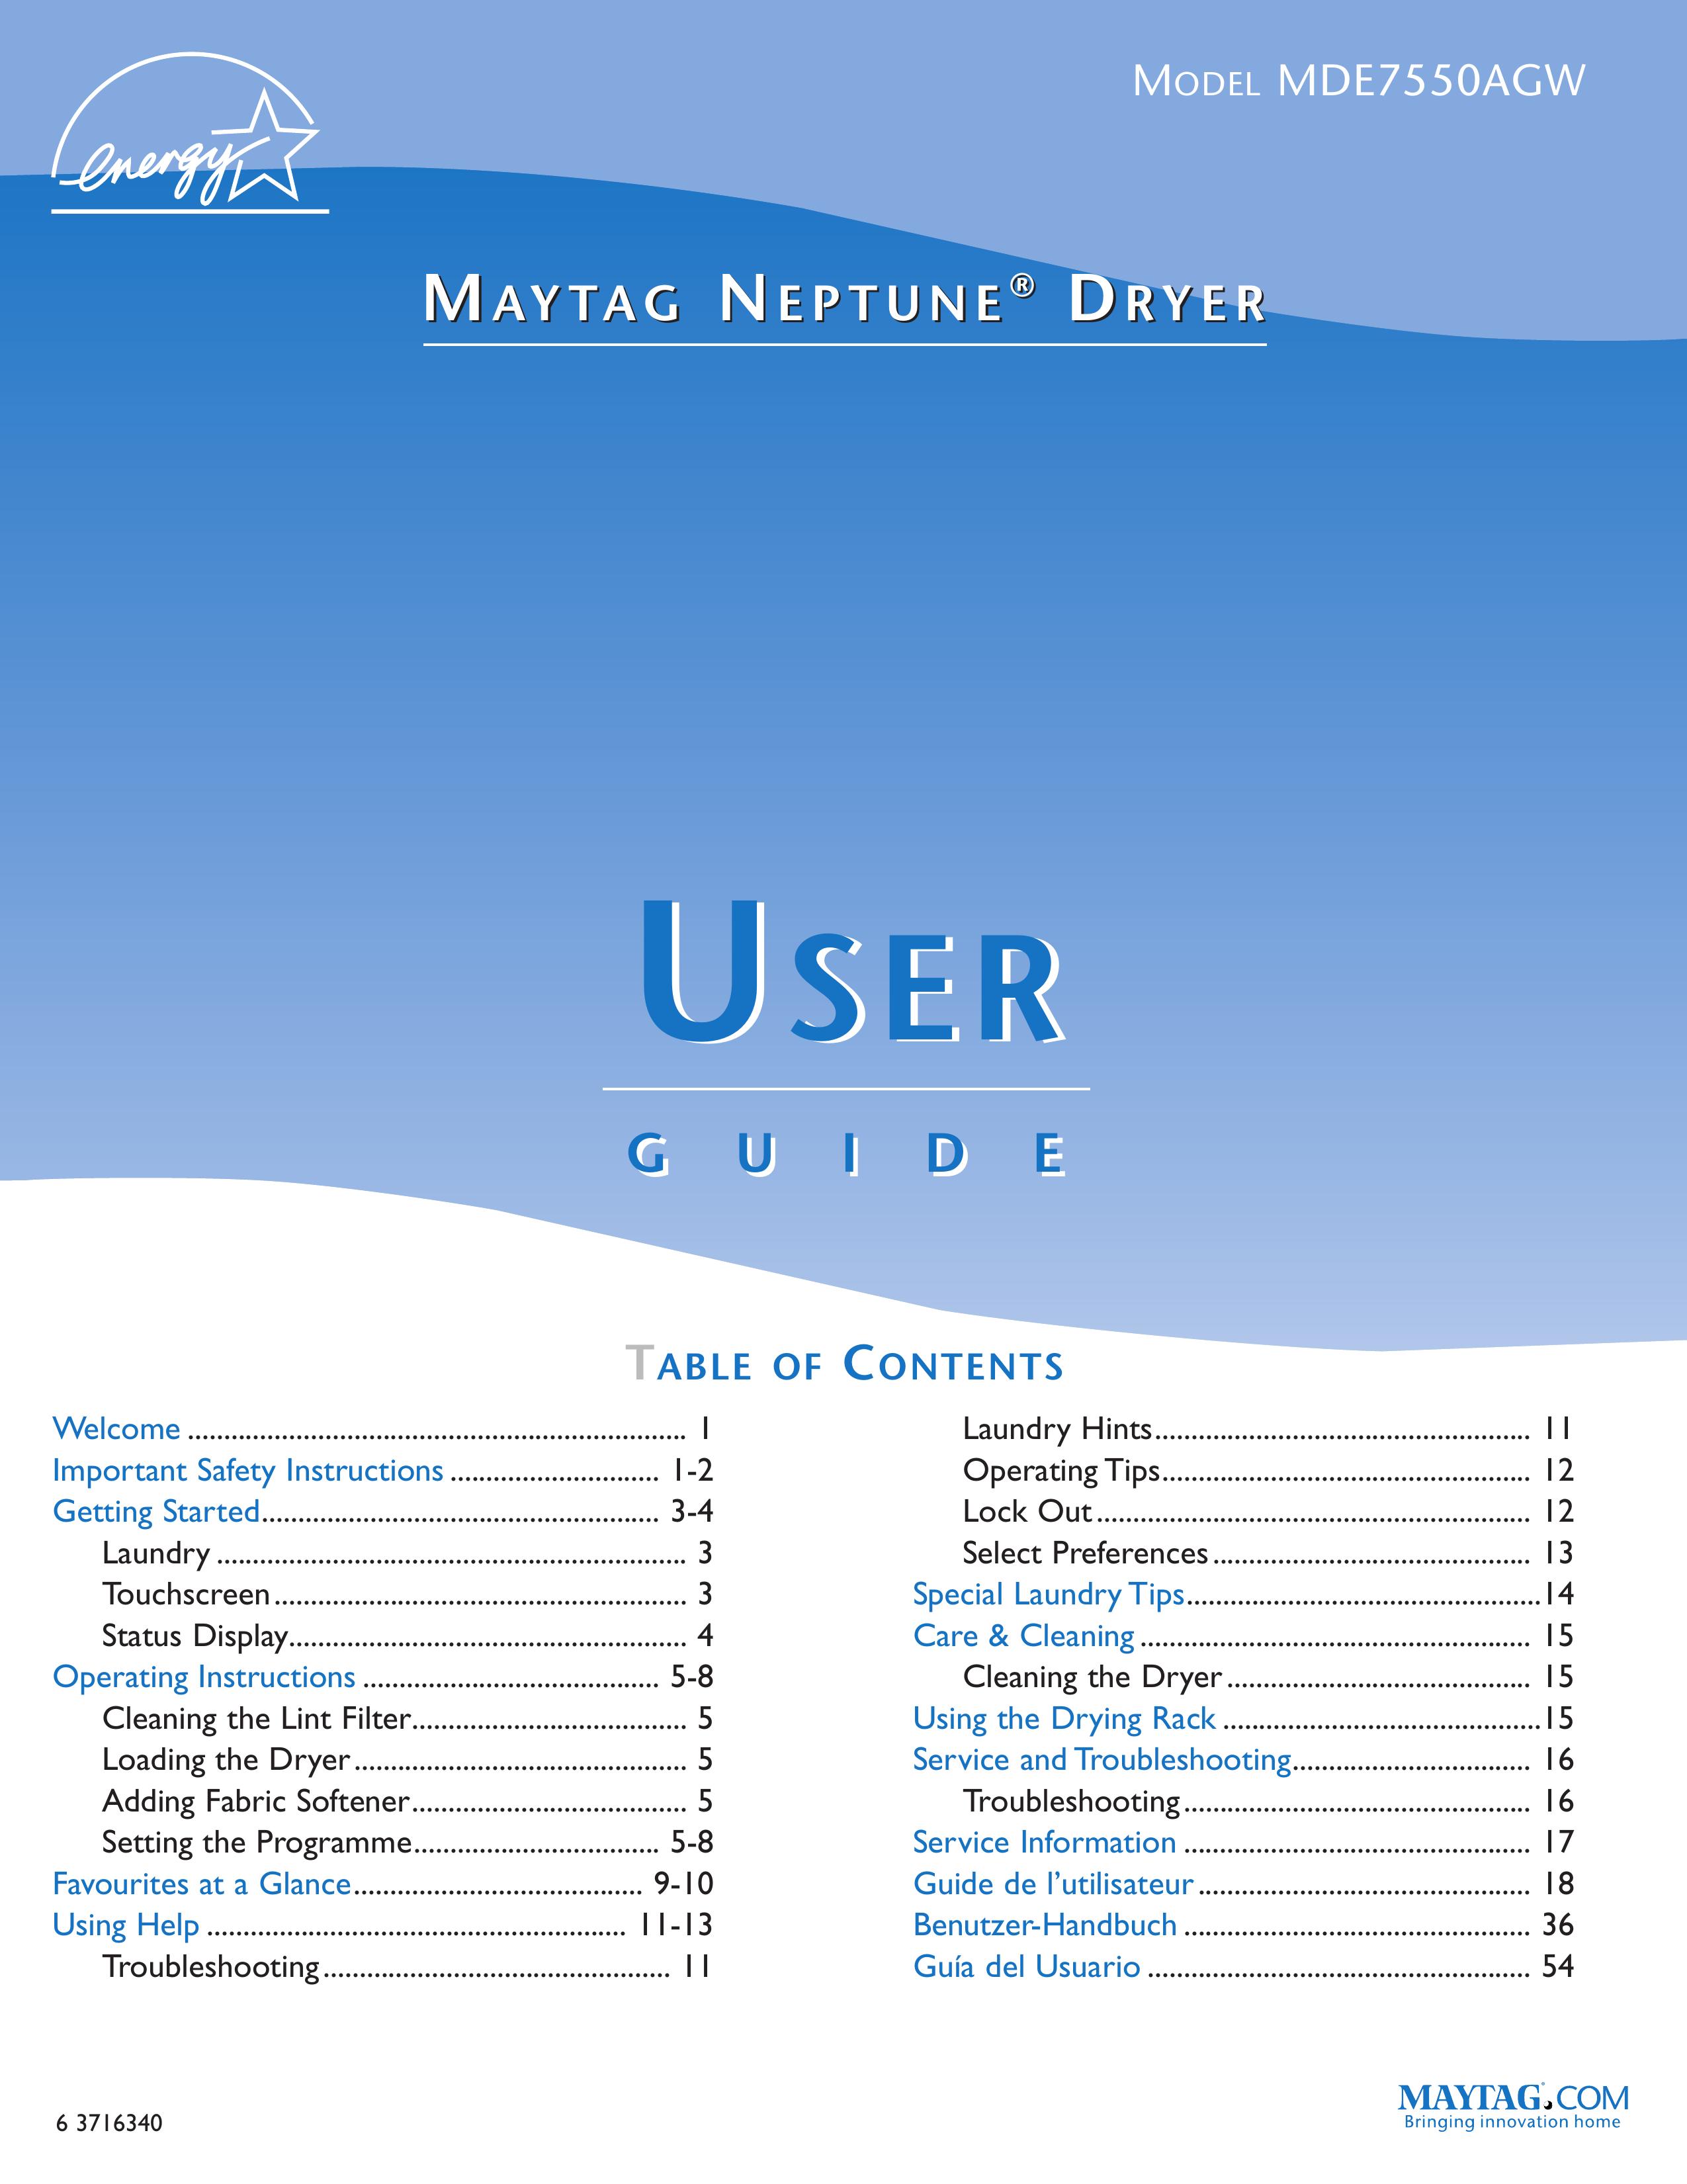 Maytag MDE7550AGW Clothes Dryer User Manual